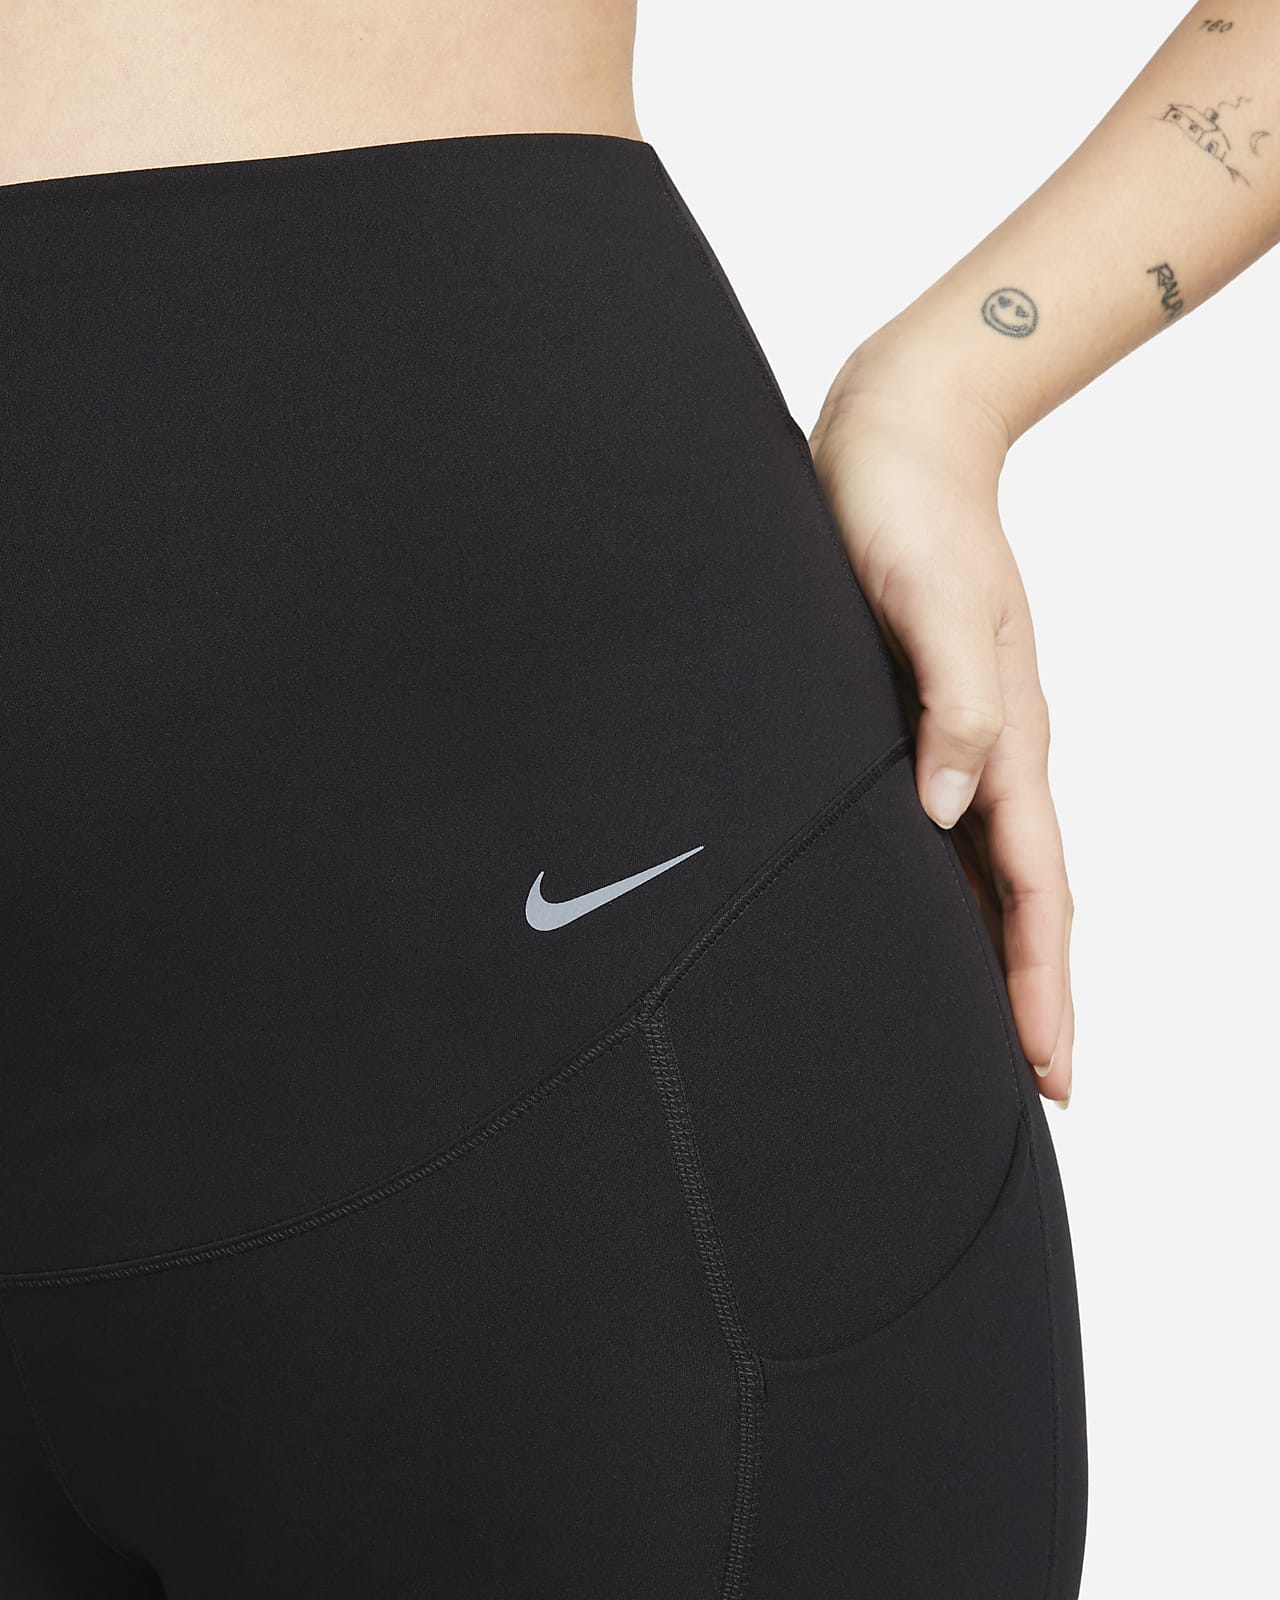 Nike Zenvy Women's Gentle-Support High-Waisted 7/8 Leggings.